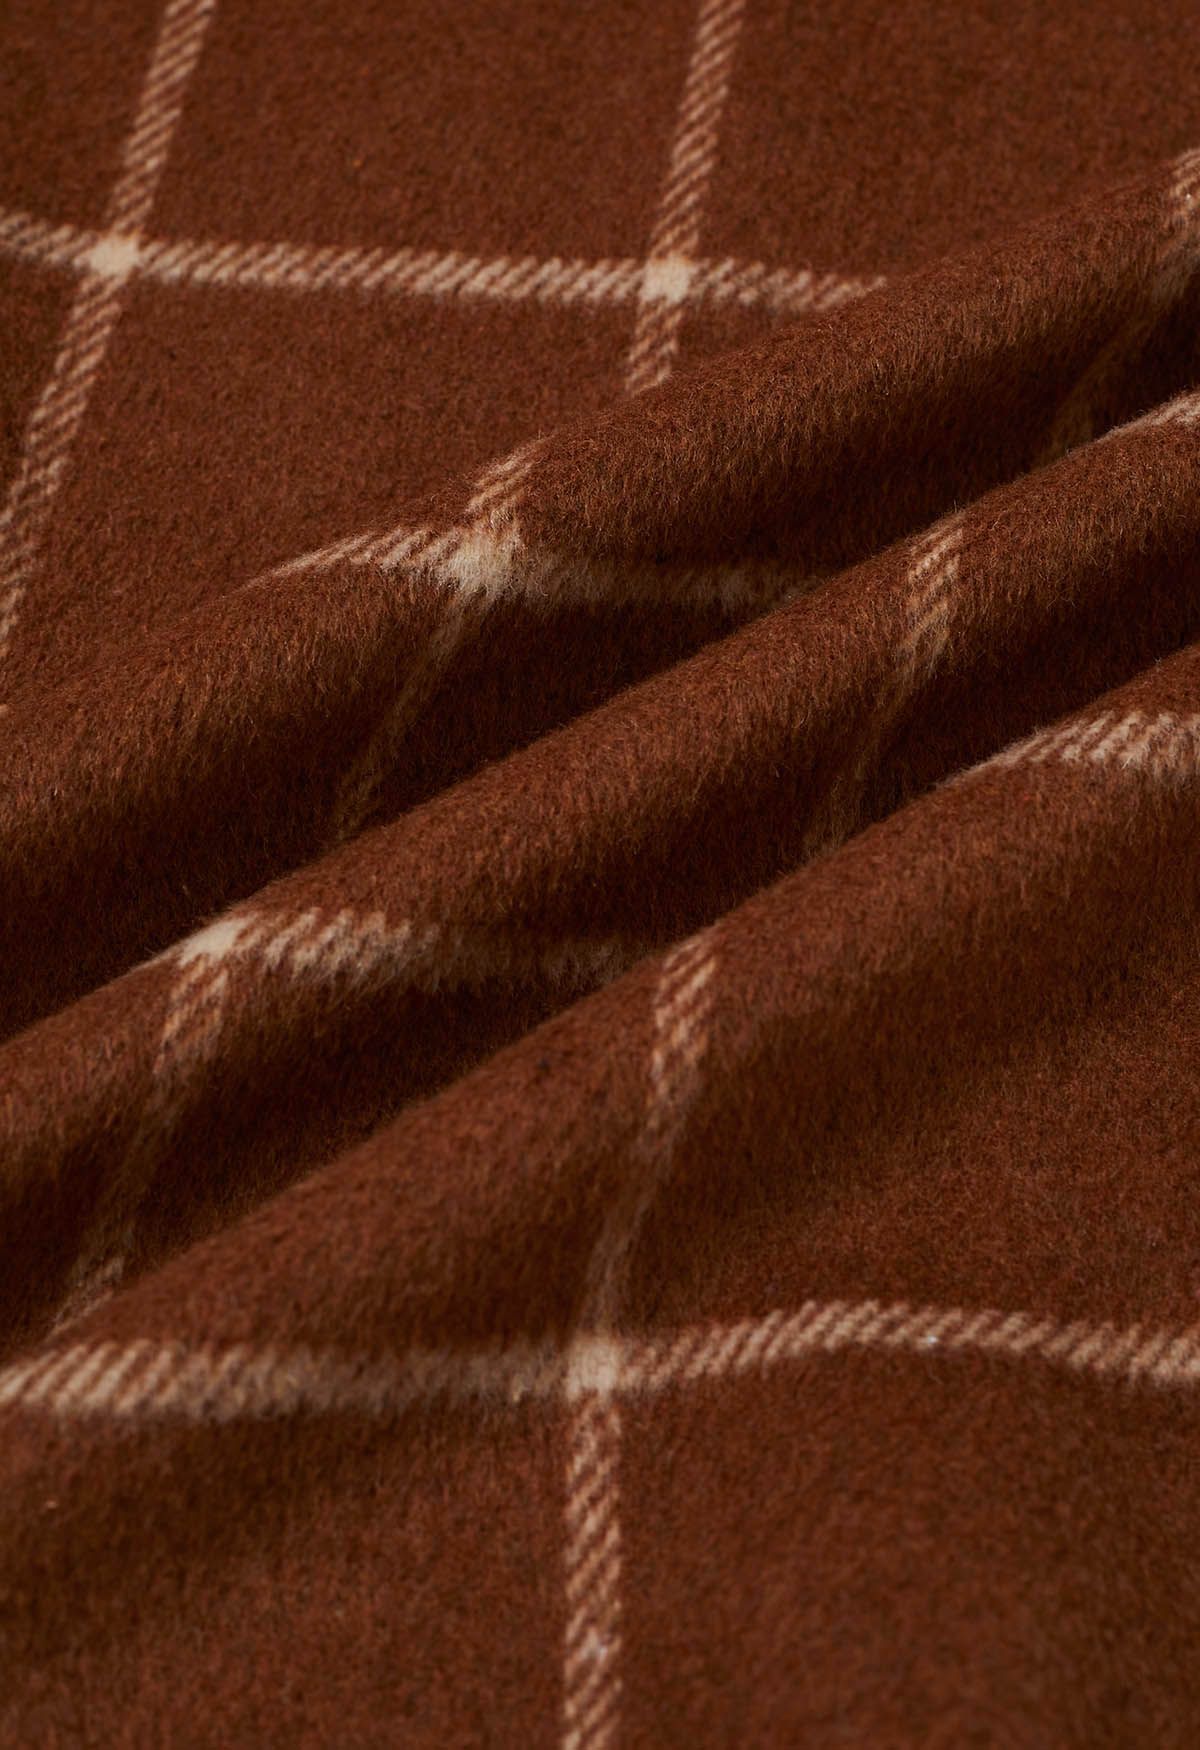 Karierter Mantel aus Wollmischung mit offener Vorderseite in Braun